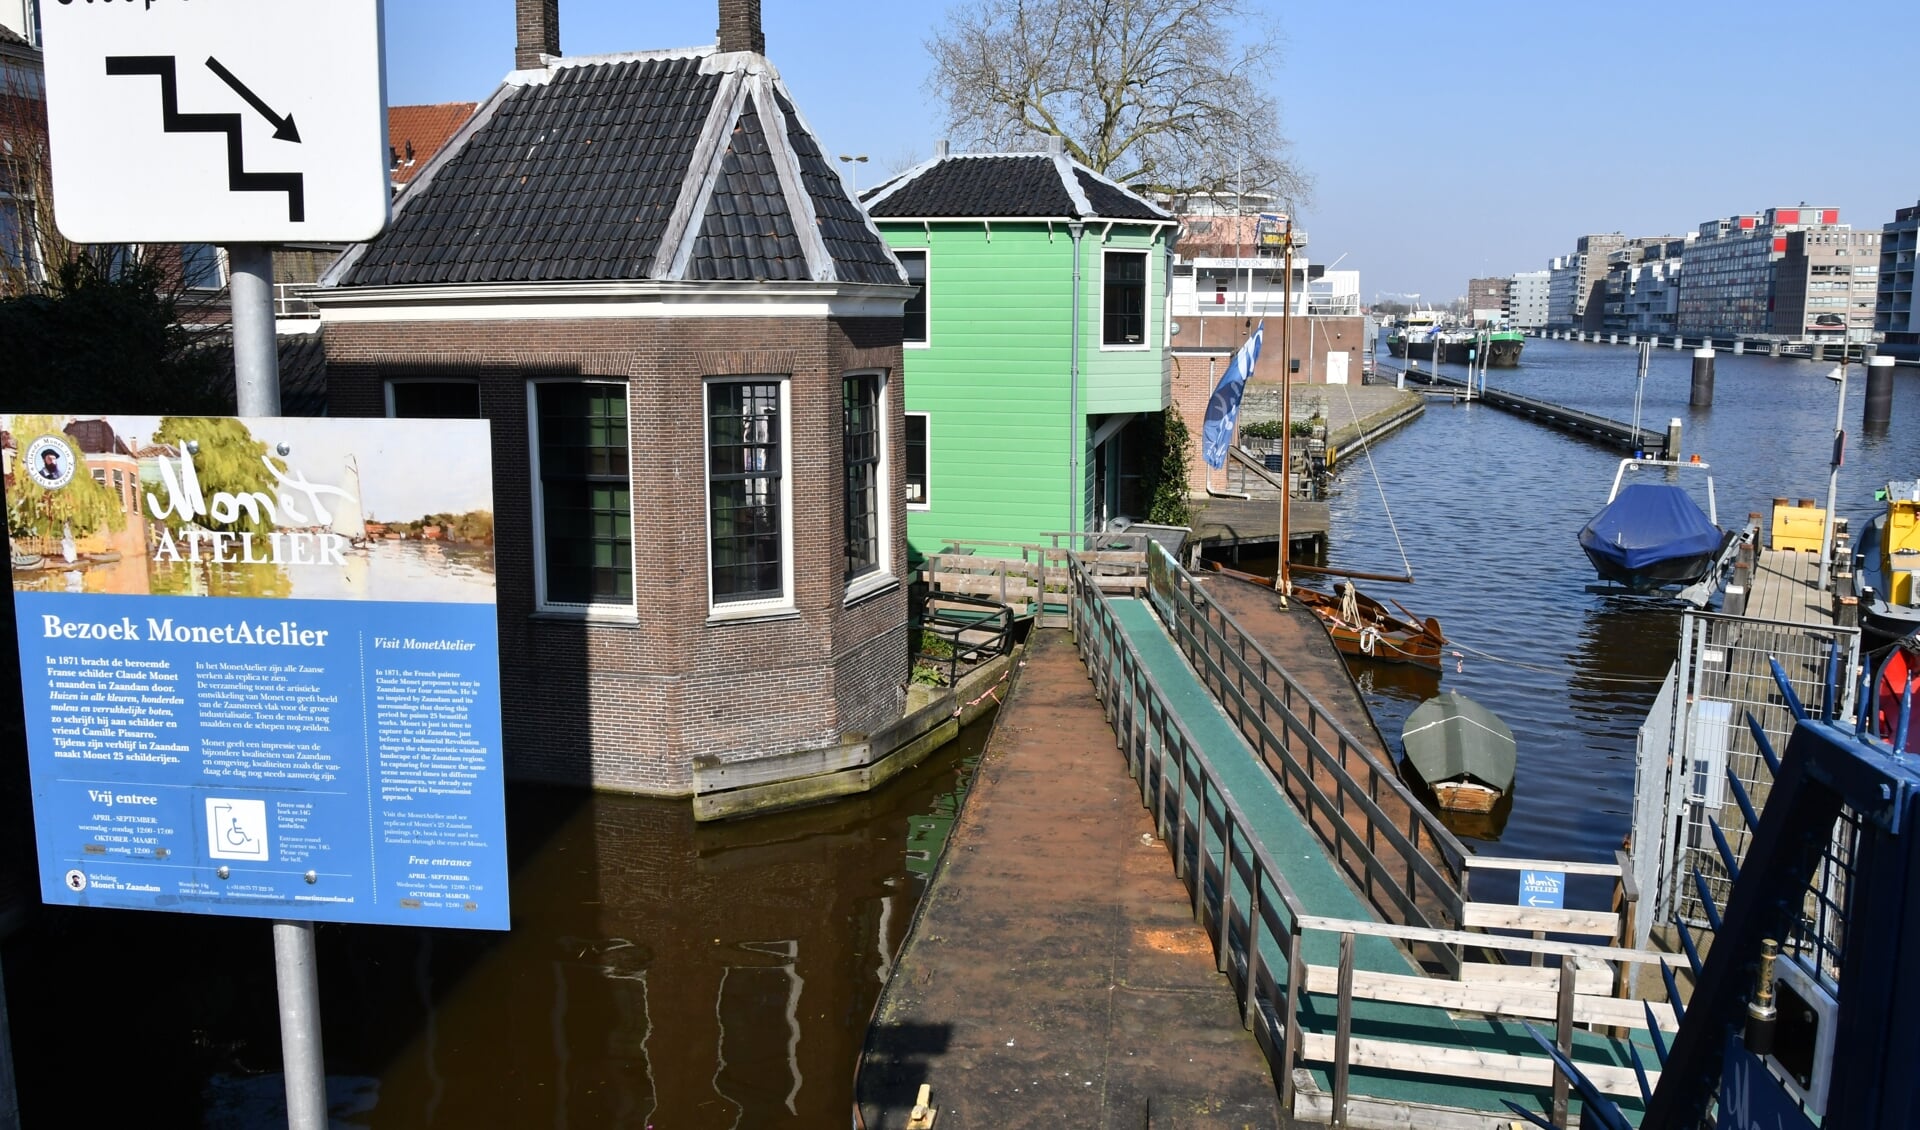 Vader Hans van Rheenen had het idee om toeristen bij het Monet atelier met de Zaanferry richting Zaanse Schans te vervoeren en weer terug. Hoe Zaans wil je het hebben?  